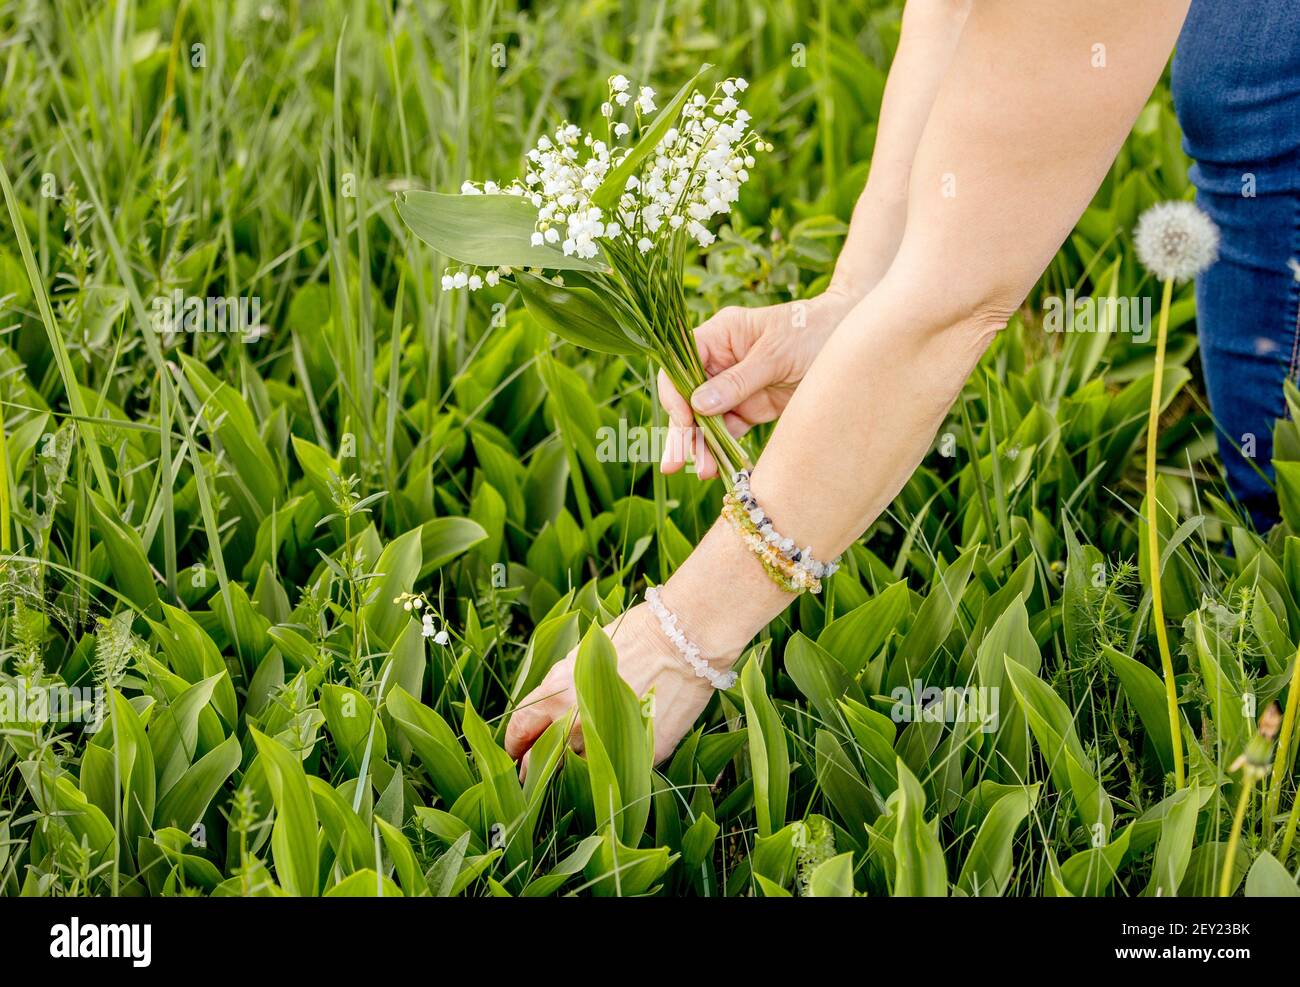 Donna che raccoglie fiori bianchi selvatici Giglio della valle (Convallaria majalis) chiamato anche: Può campane, le lacrime di nostra Signora e le lacrime di Maria all'aperto in prato Foto Stock